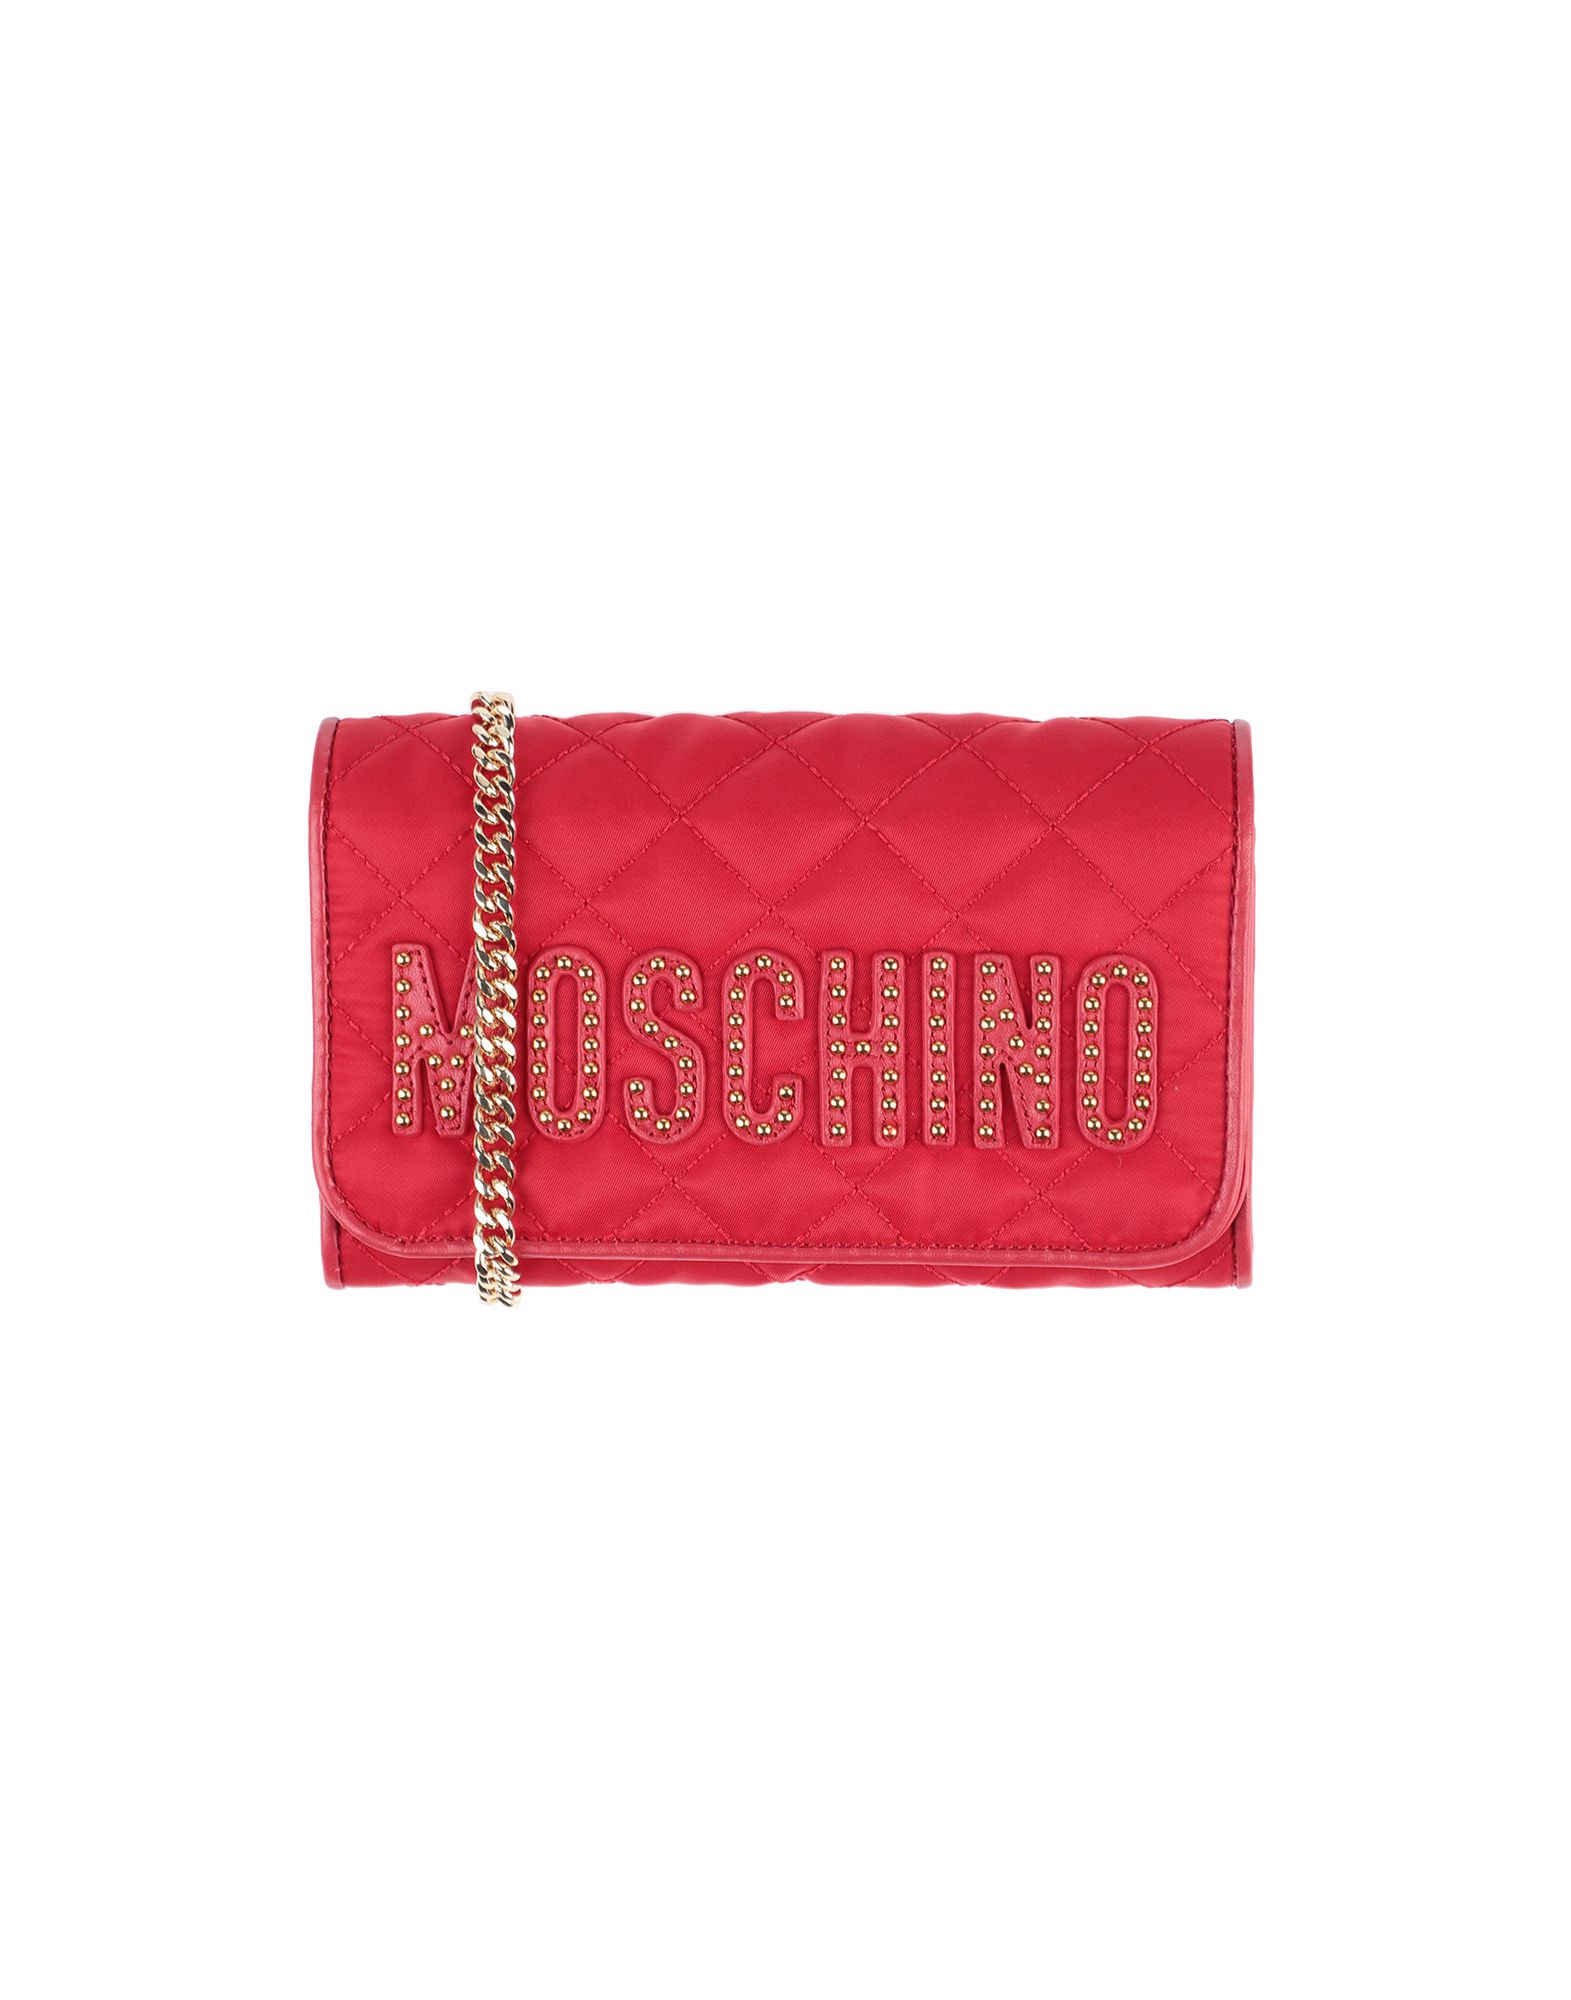 モスキーノ(MOSCHINO) 財布 | 通販・人気ランキング - 価格.com